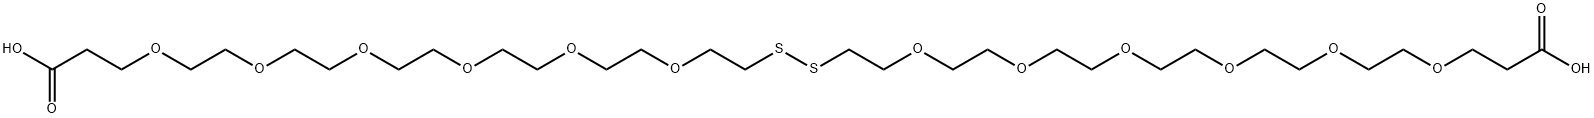 羧酸-六聚乙二醇-二硫键-六聚乙二醇-羧酸 结构式